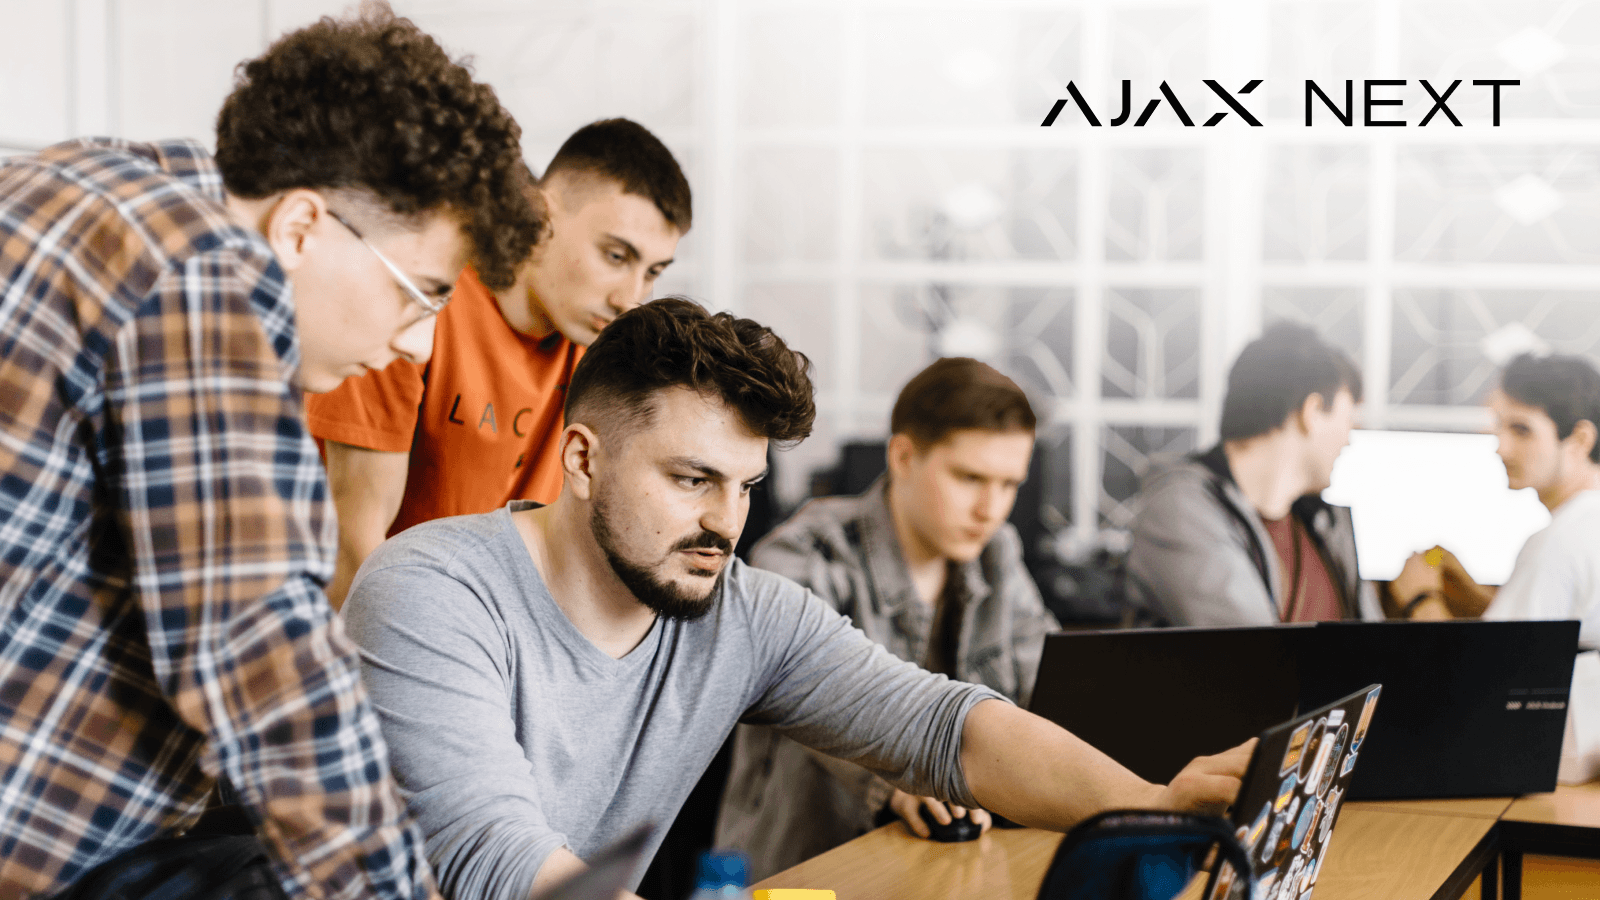 Ajax Systems lanza una valiosa iniciativa educativa  Ajax Next